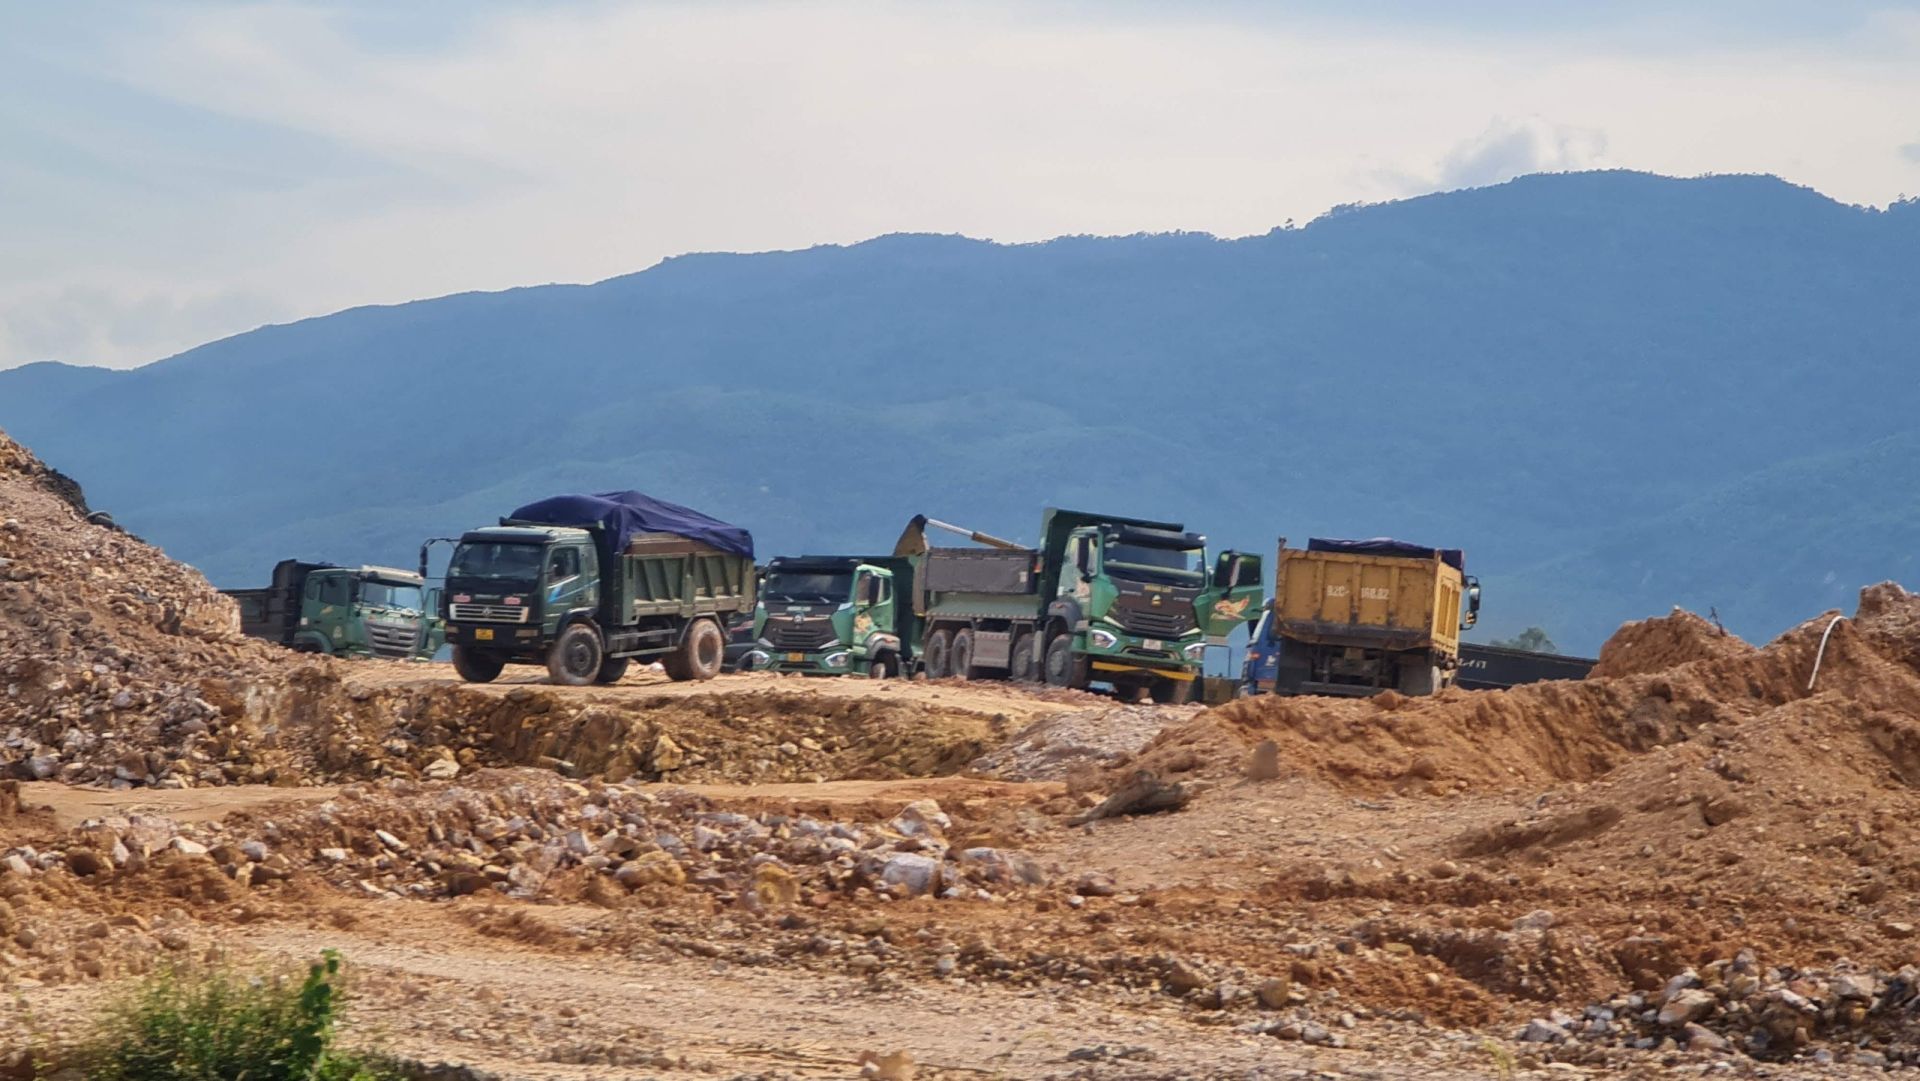 UBND tỉnh Quảng Nam vừa ban hành Quyết định xử phạt 120 triệu đồng đối với  Xí nghiệp hợp tác xã công nghiệp, xây dựng và dịch vụ 26-3 Đại Lộc (Xí nghiệp 26-3 Đại Lộc) về hành vi khai thác khoáng sản vượt công suất.